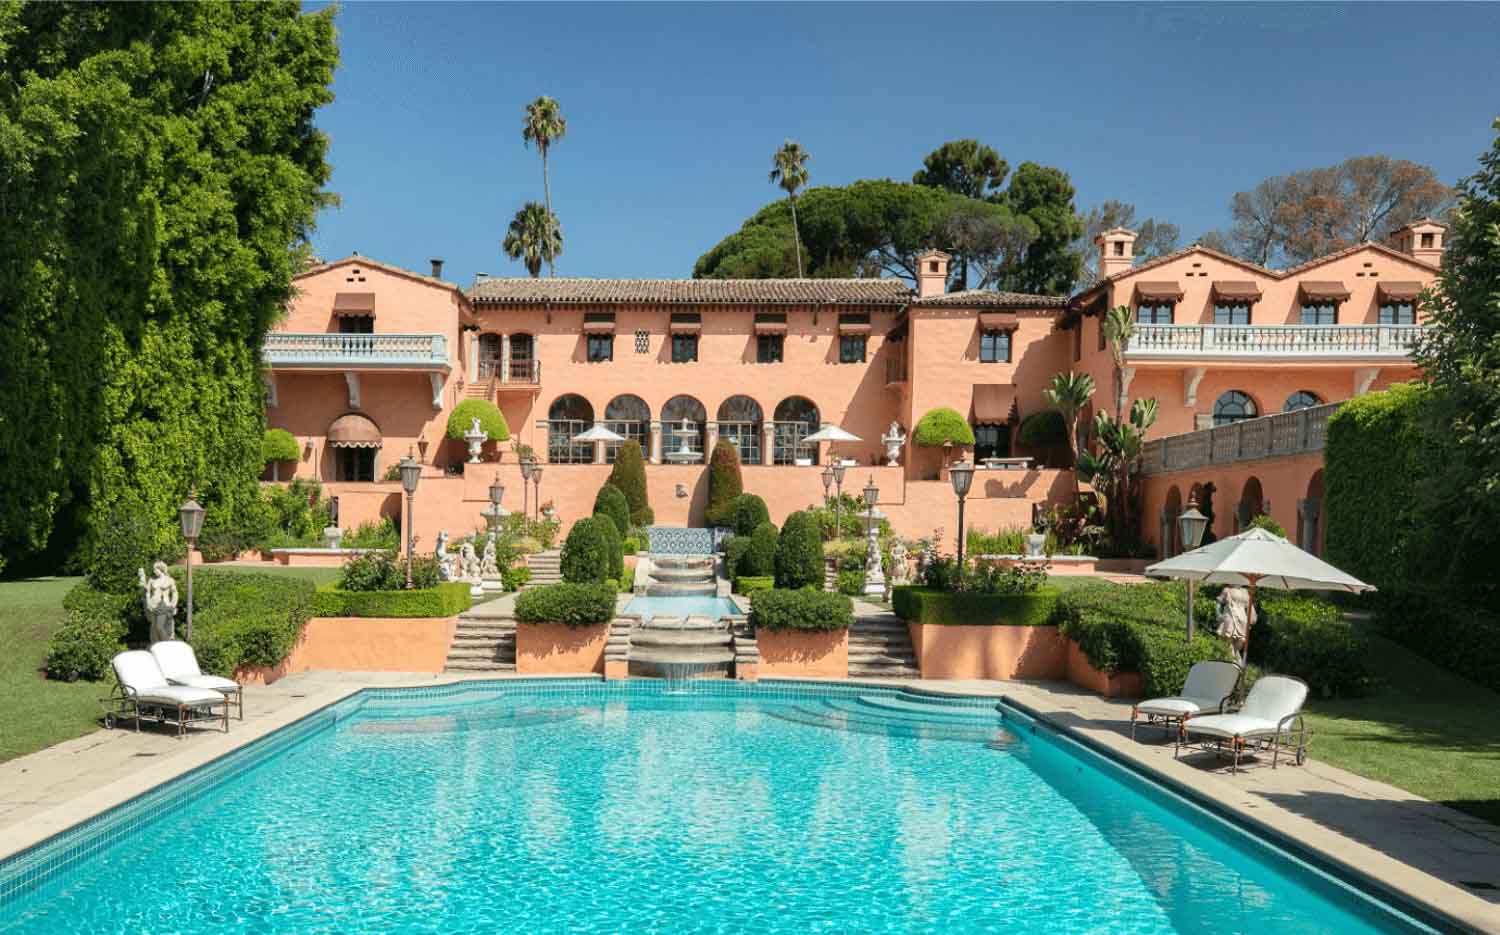 Thiết kế căn villa đắt giá bậc nhất thế giới Hearst Mansion